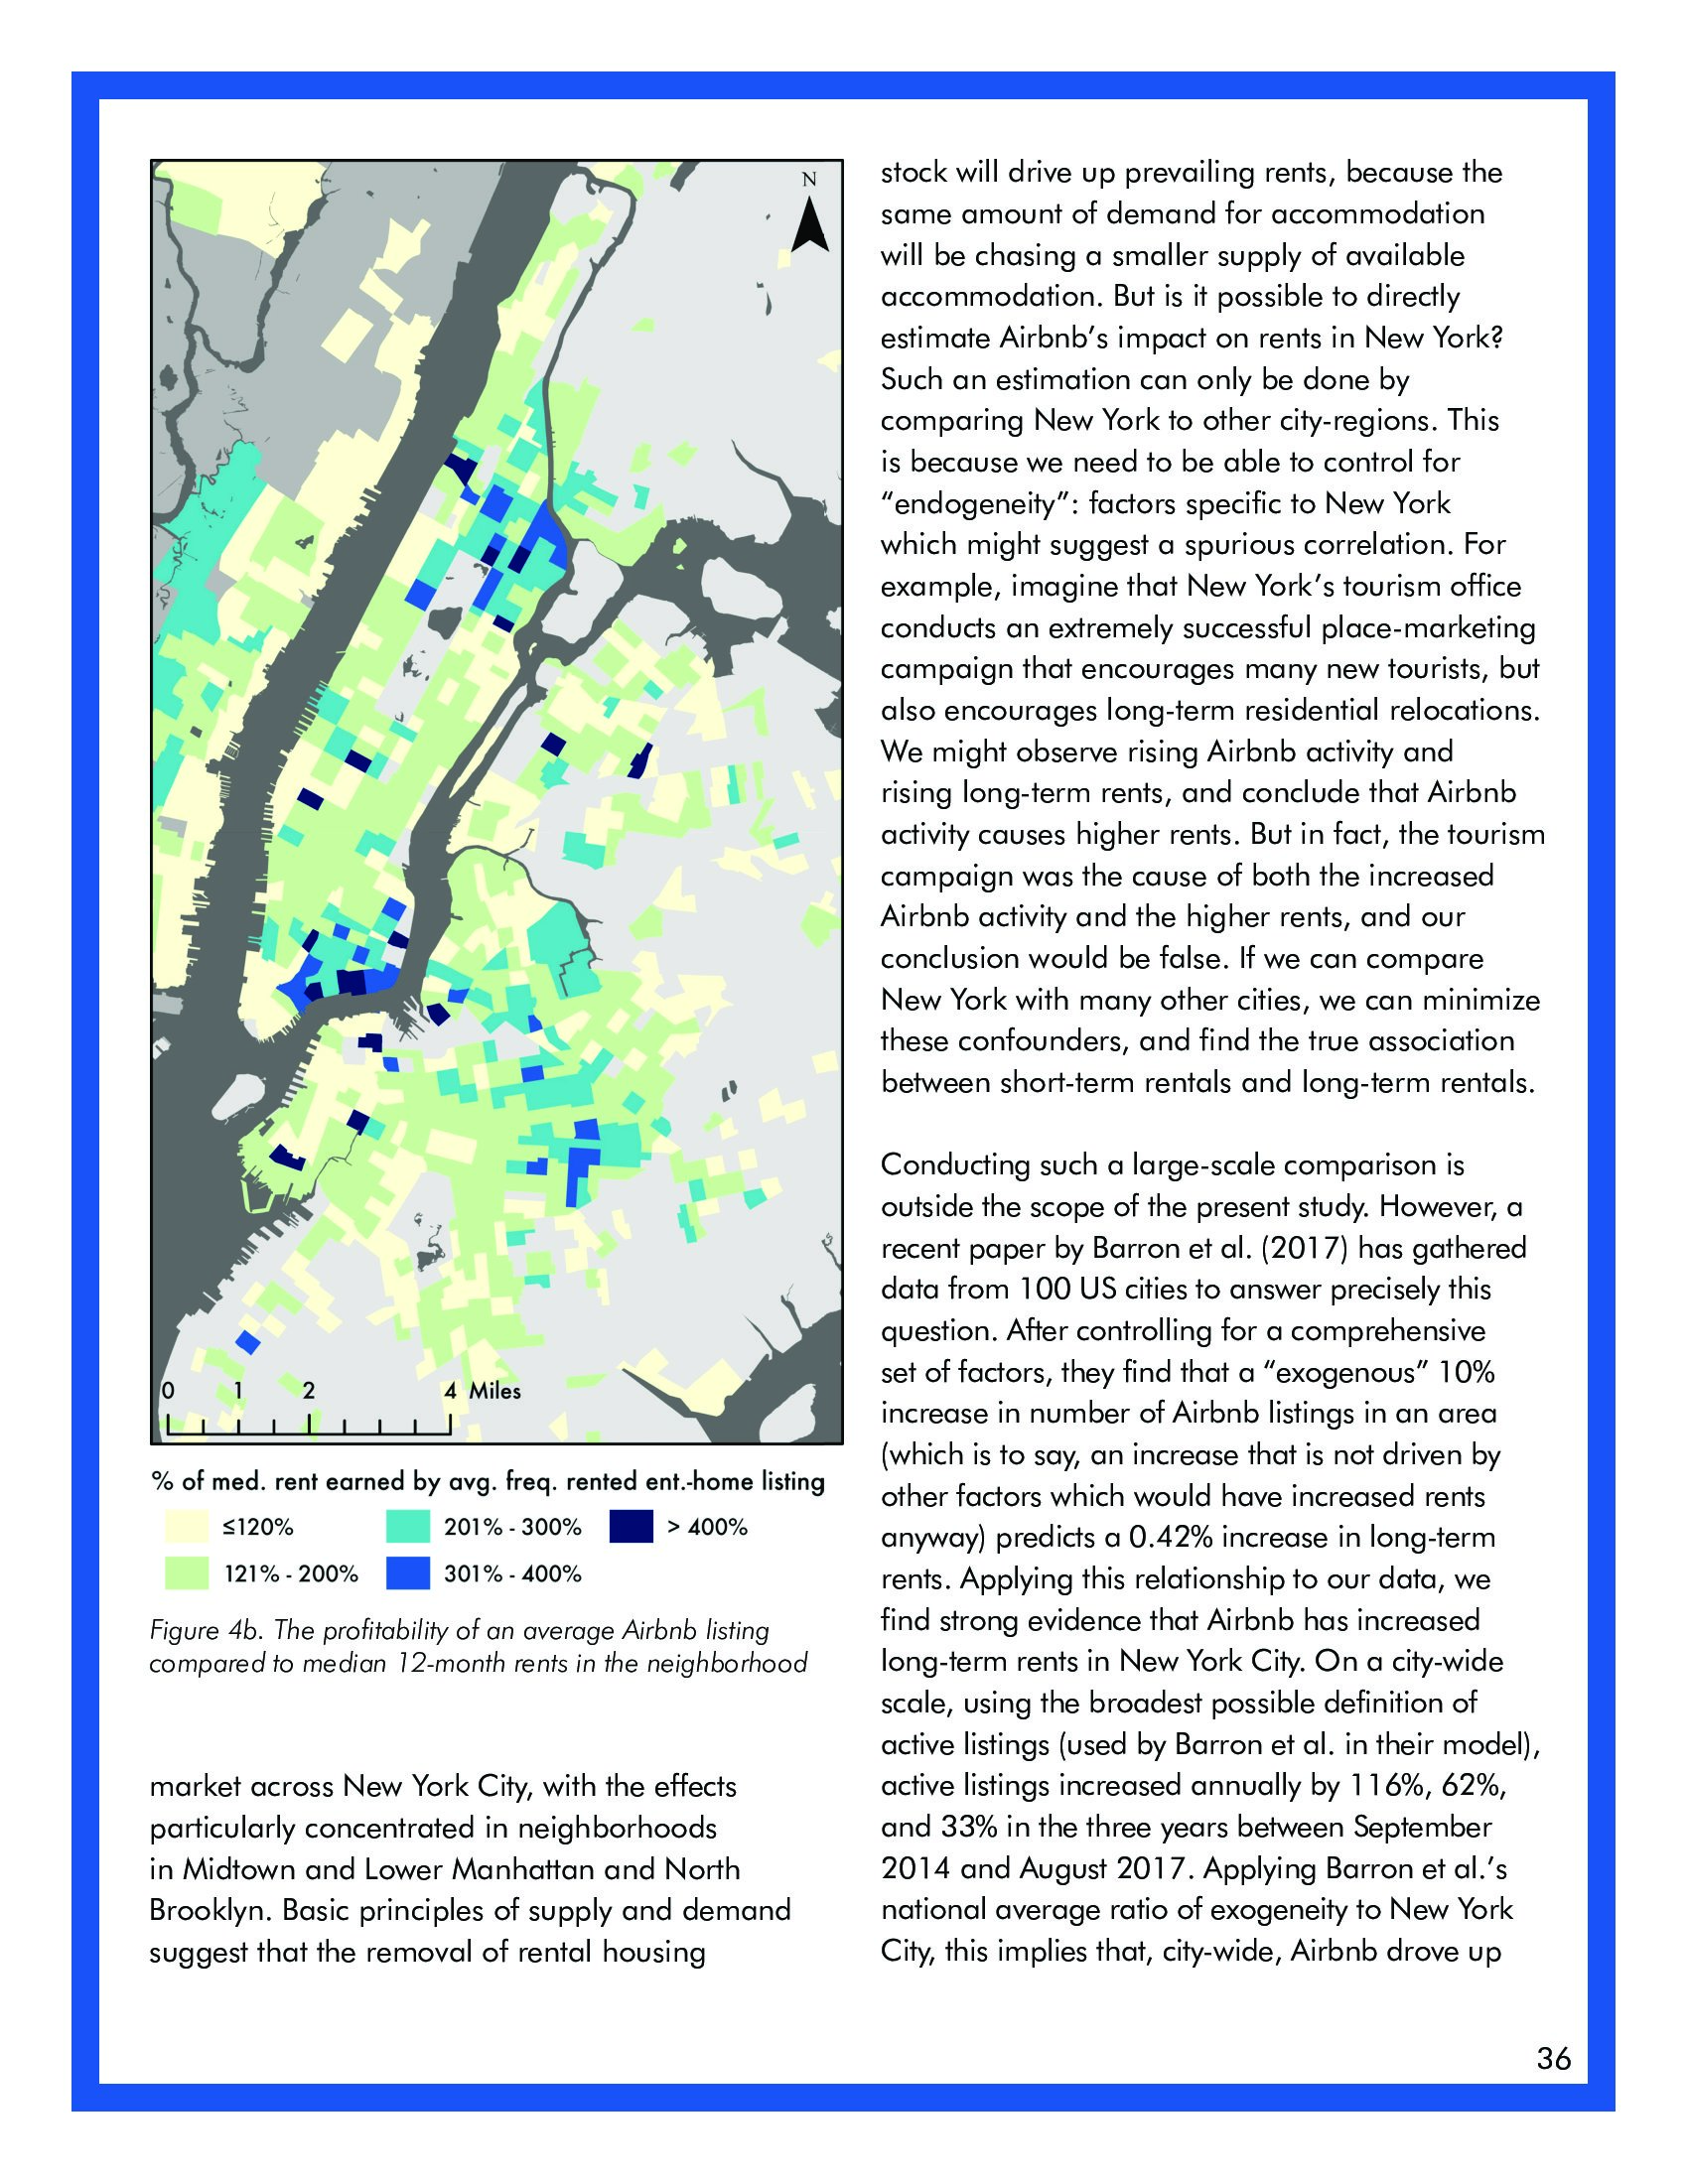 麦吉尔大学：关于纽约市短租的高成本报告(图36)